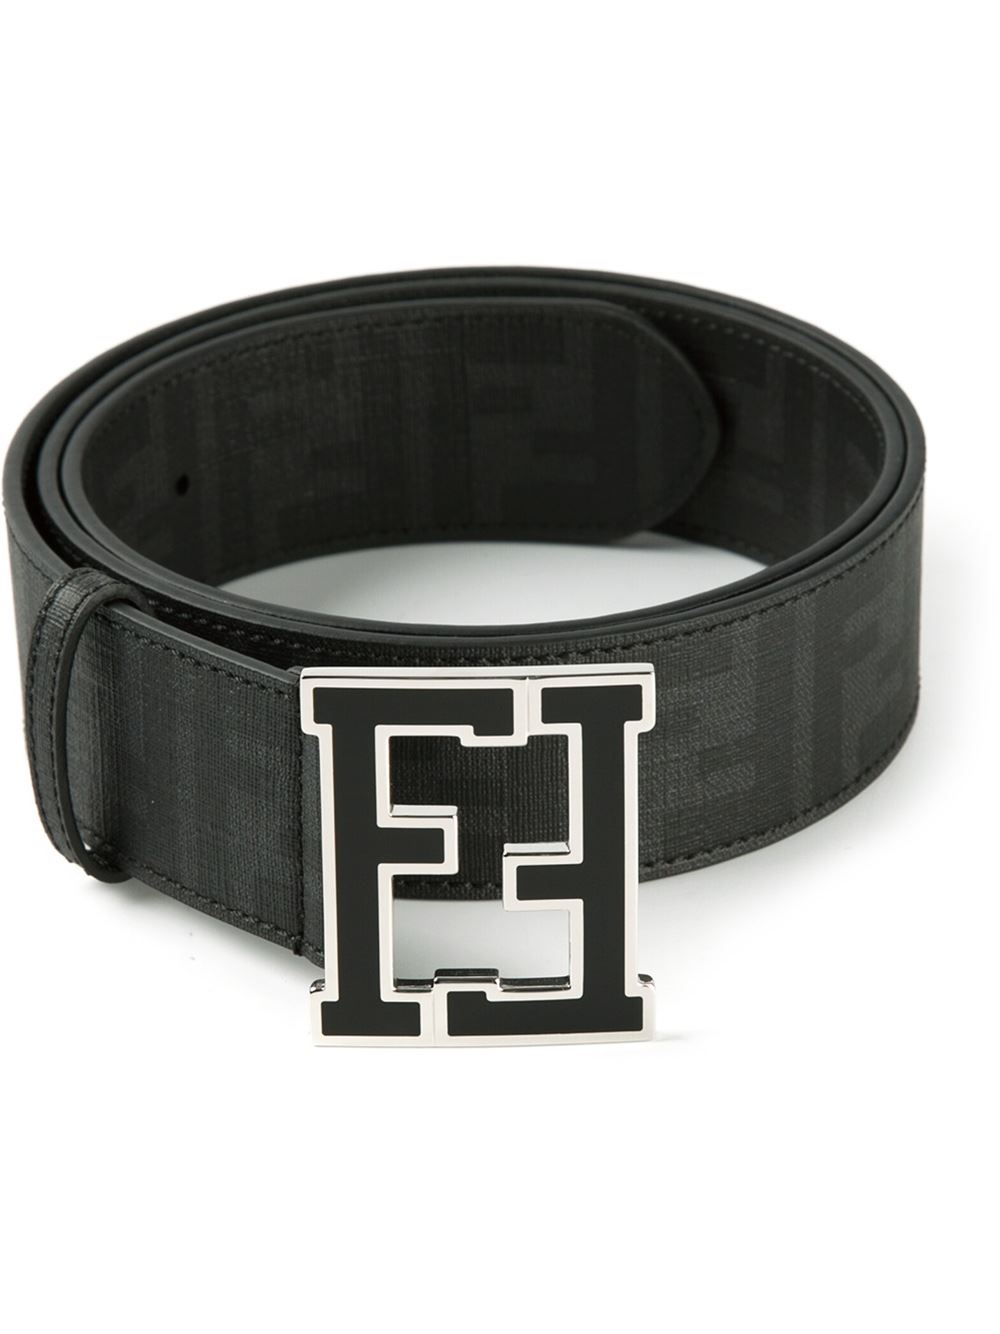 fendi men's belt for sale